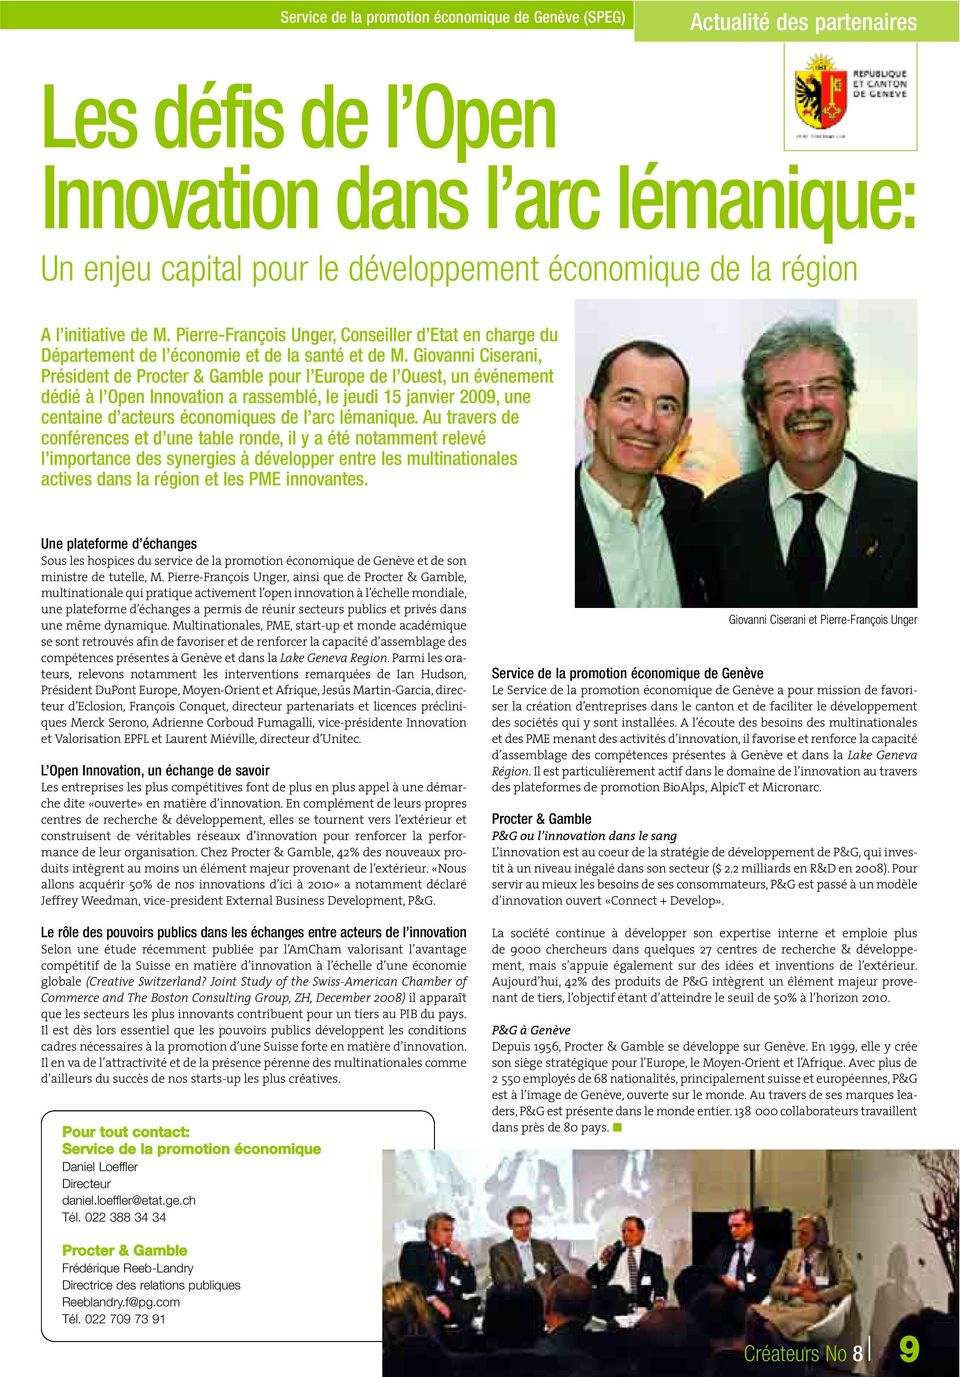 Giovanni Ciserani, Président de Procter & Gamble pour l Europe de l Ouest, un événement dédié à l Open Innovation a rassemblé, le jeudi 15 janvier 2009, une centaine d acteurs économiques de l arc